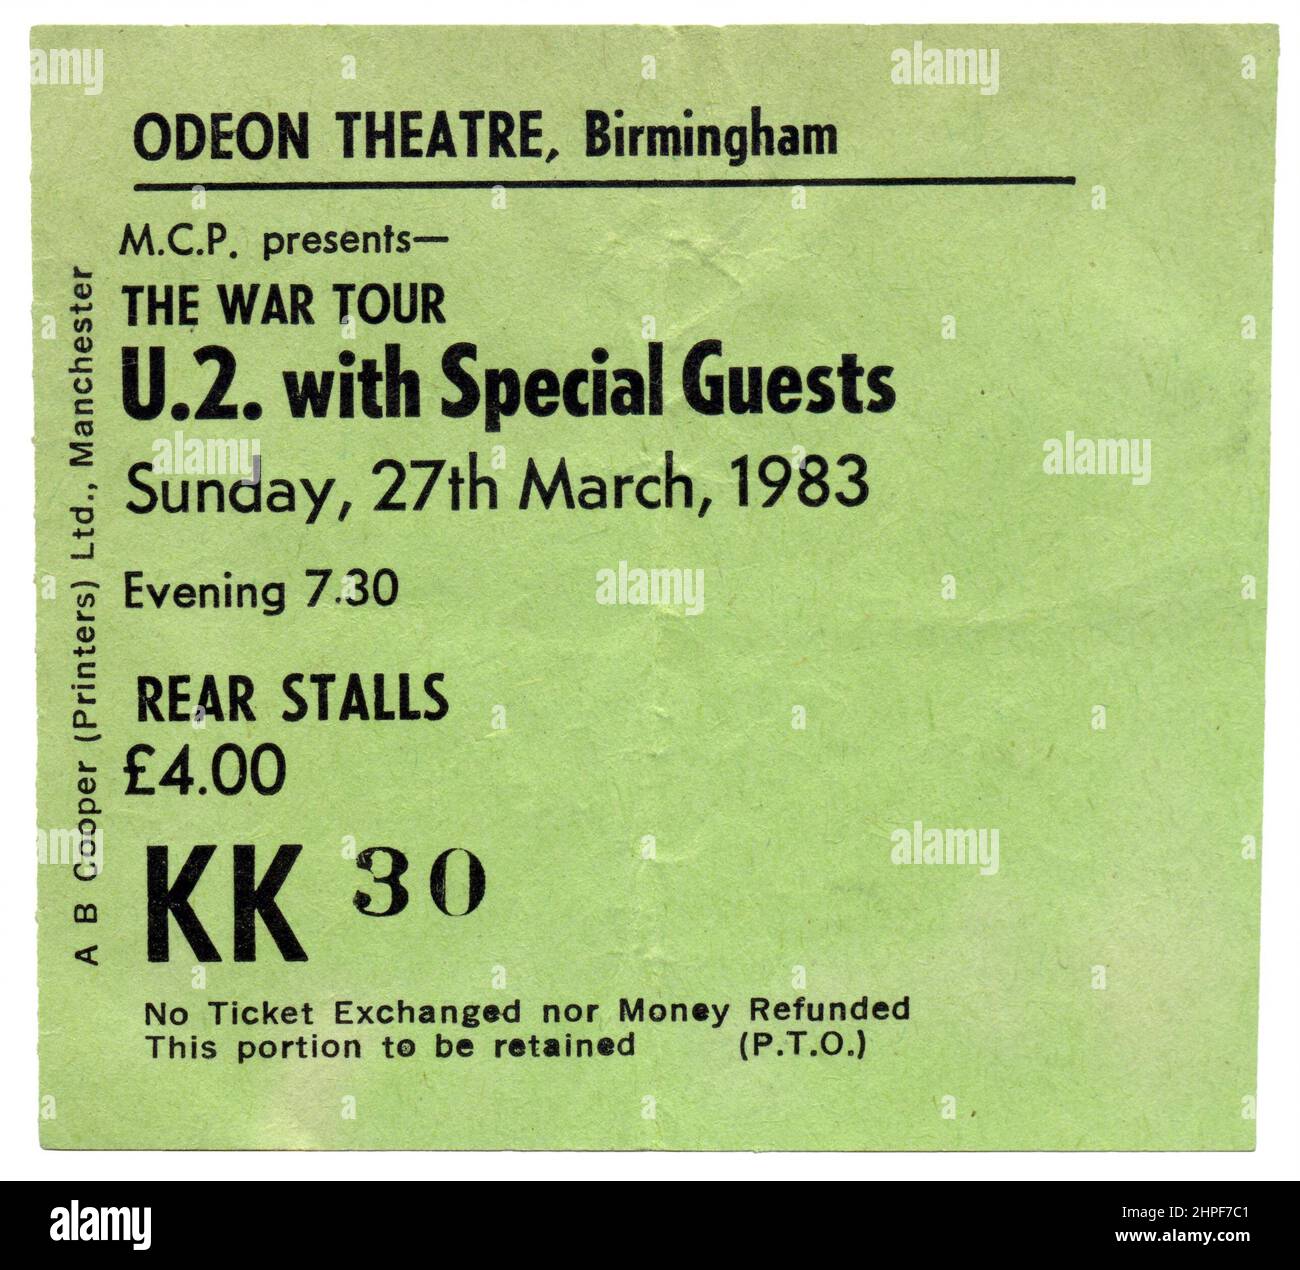 U2 Konzertkarte für die war Tour, Birmingham Odeon, Großbritannien, 1983 Stockfoto